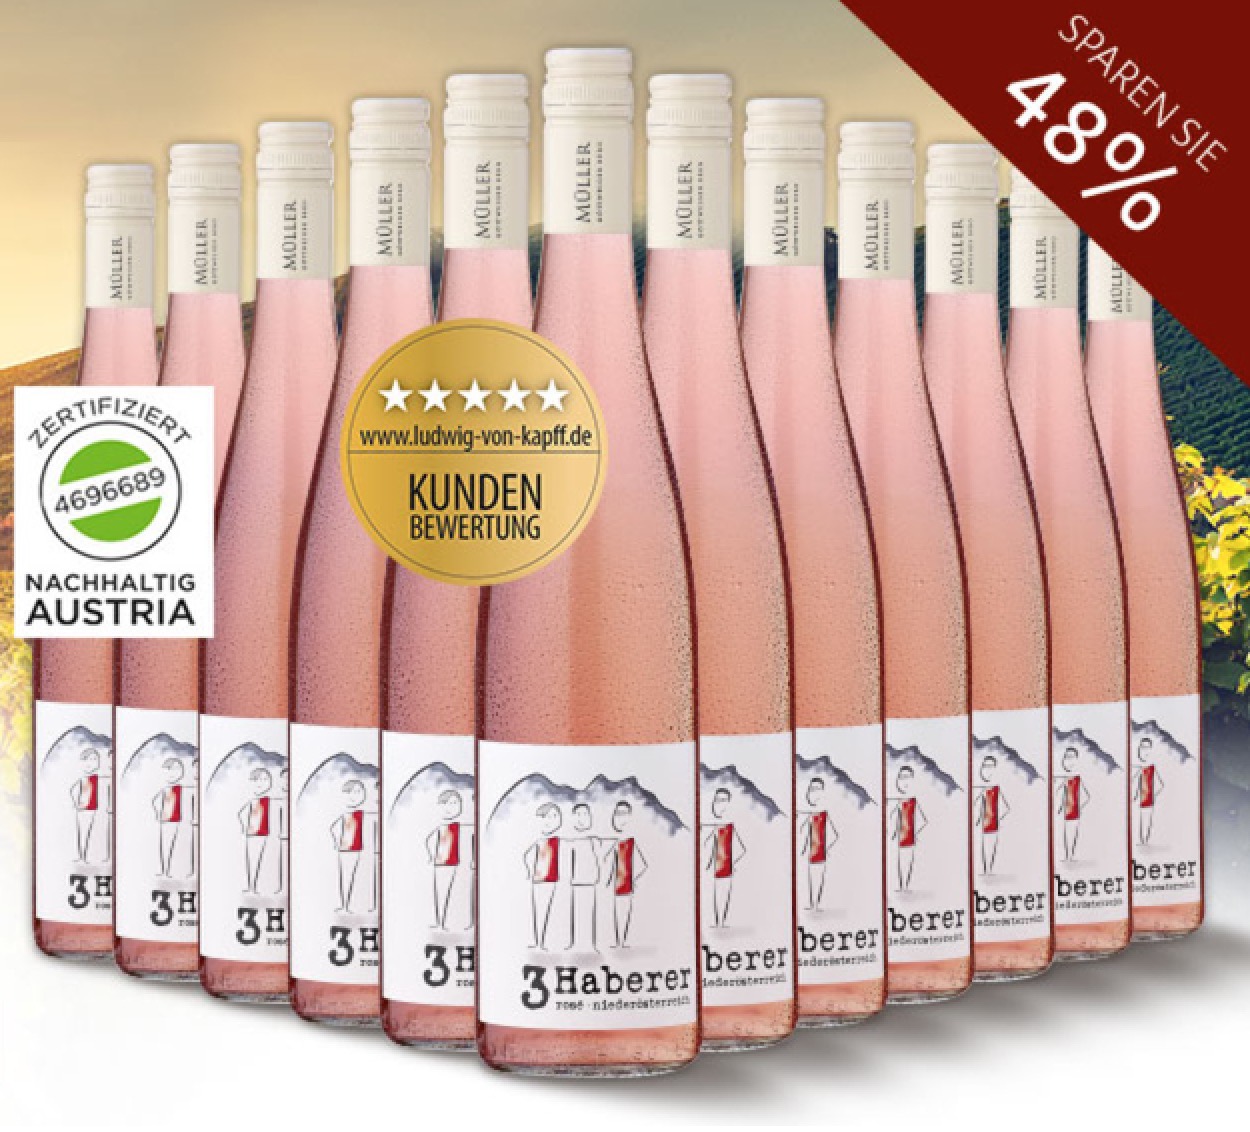 12er Vorratspaket 2016er “3 Haberer” Rosé Wein für nur 42,90 Euro inkl. Versand